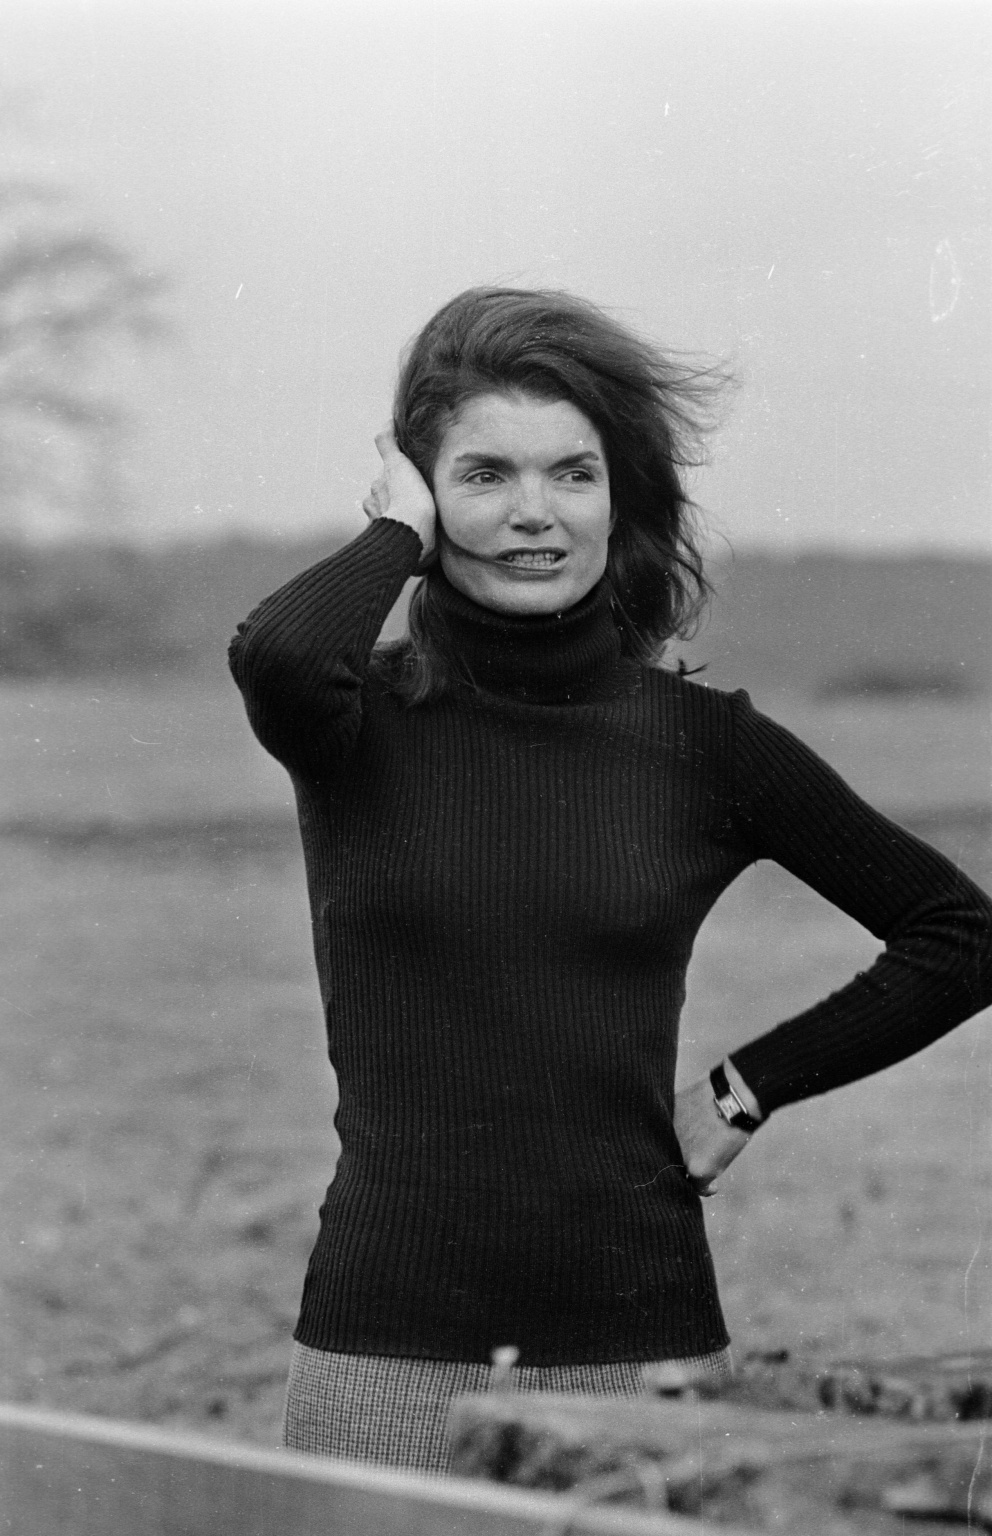 1969

Ikonická fotografie Jackie Kennedy.
